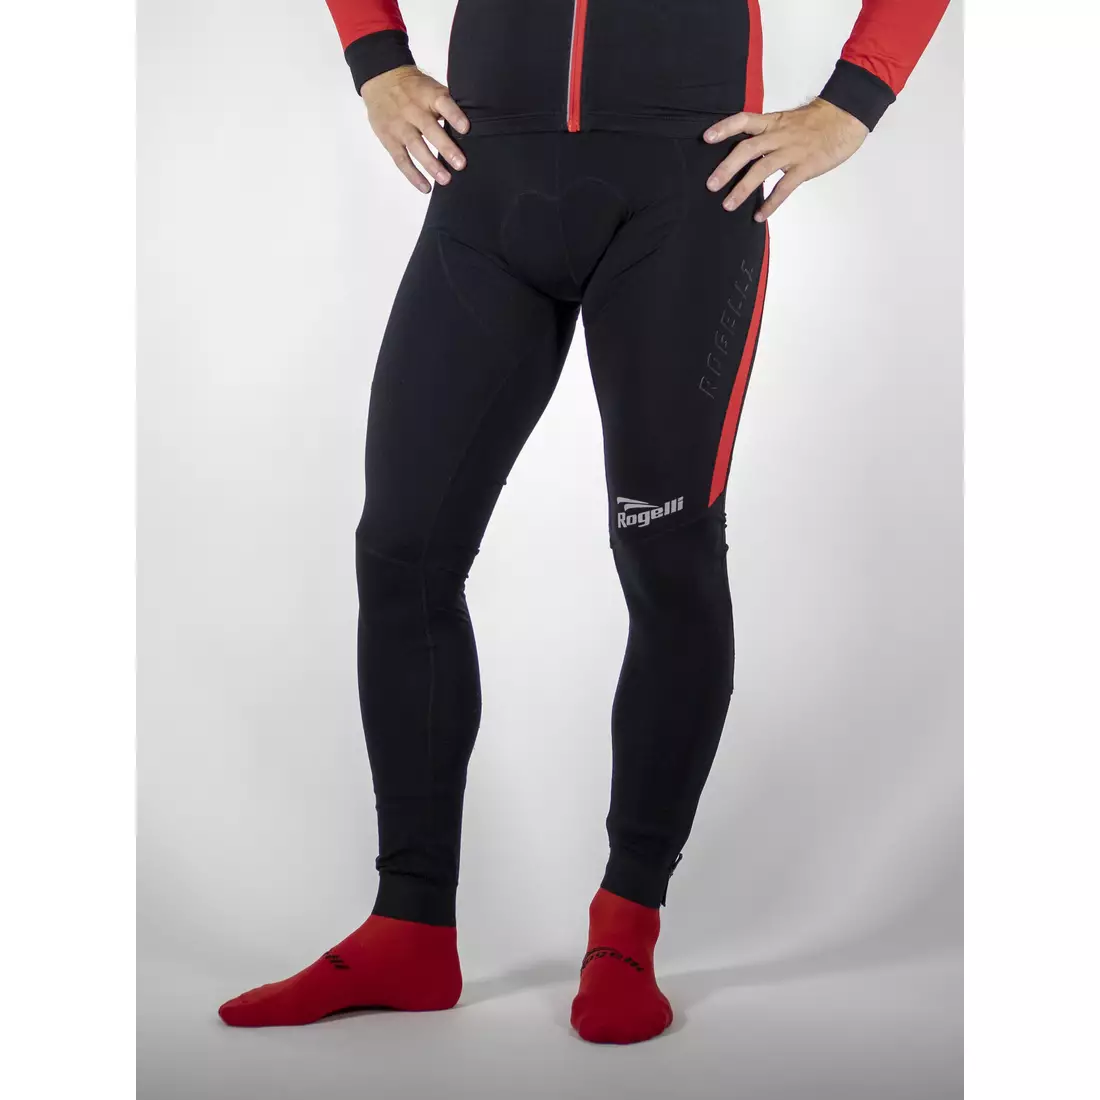 ROGELLI TRAVO 3.0 zateplené cyklistické kalhoty, šle, černo-červené